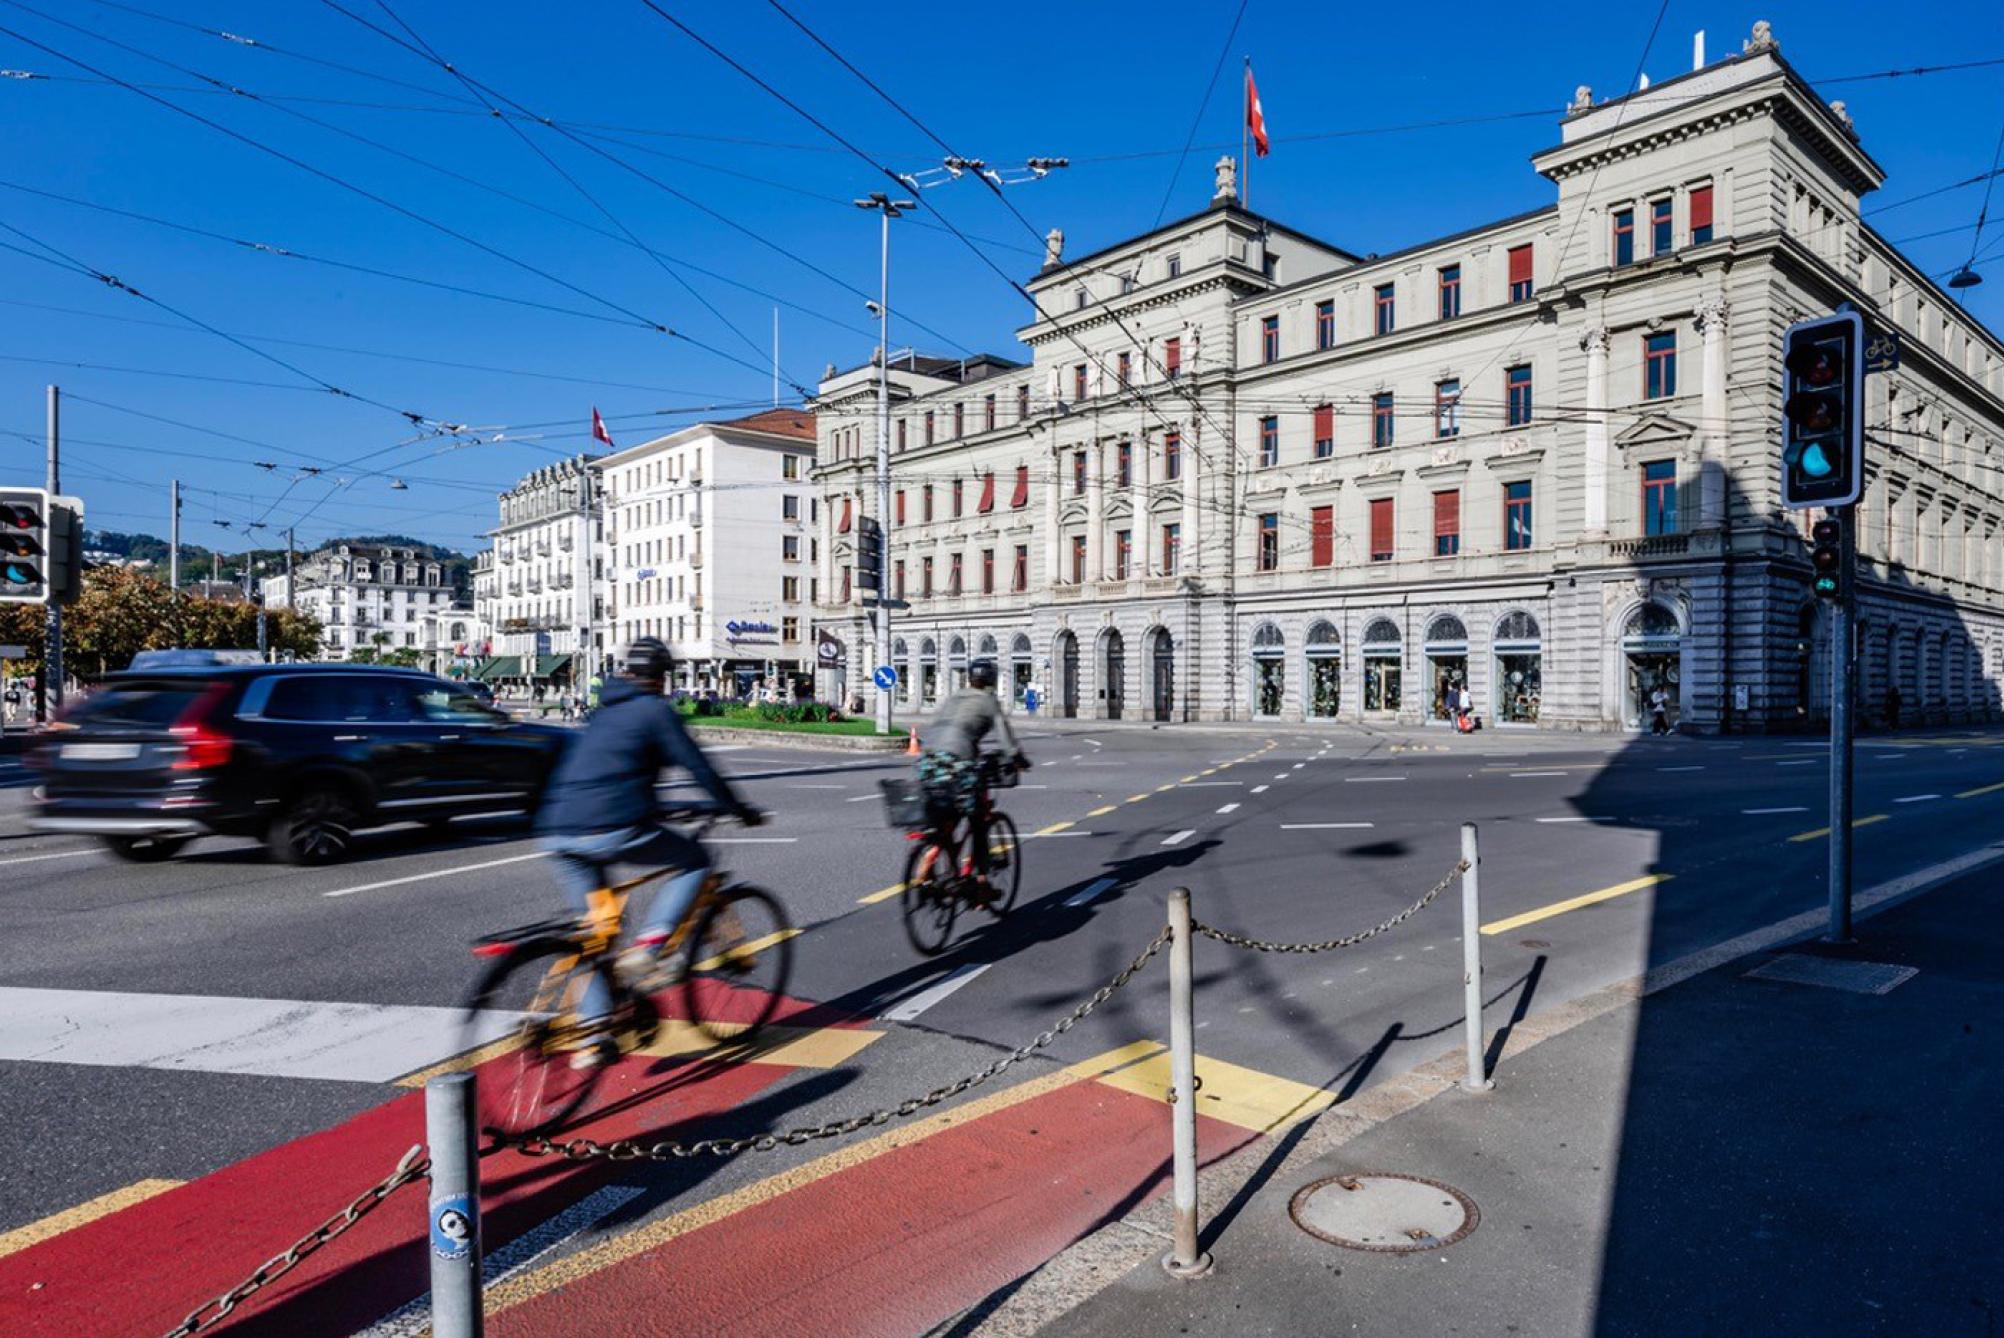 Auf dem Bild ist das Gebäude des Bundesgerichts in Luzern zu sehen. Es steht an einer belebten Strassenkreuzung.